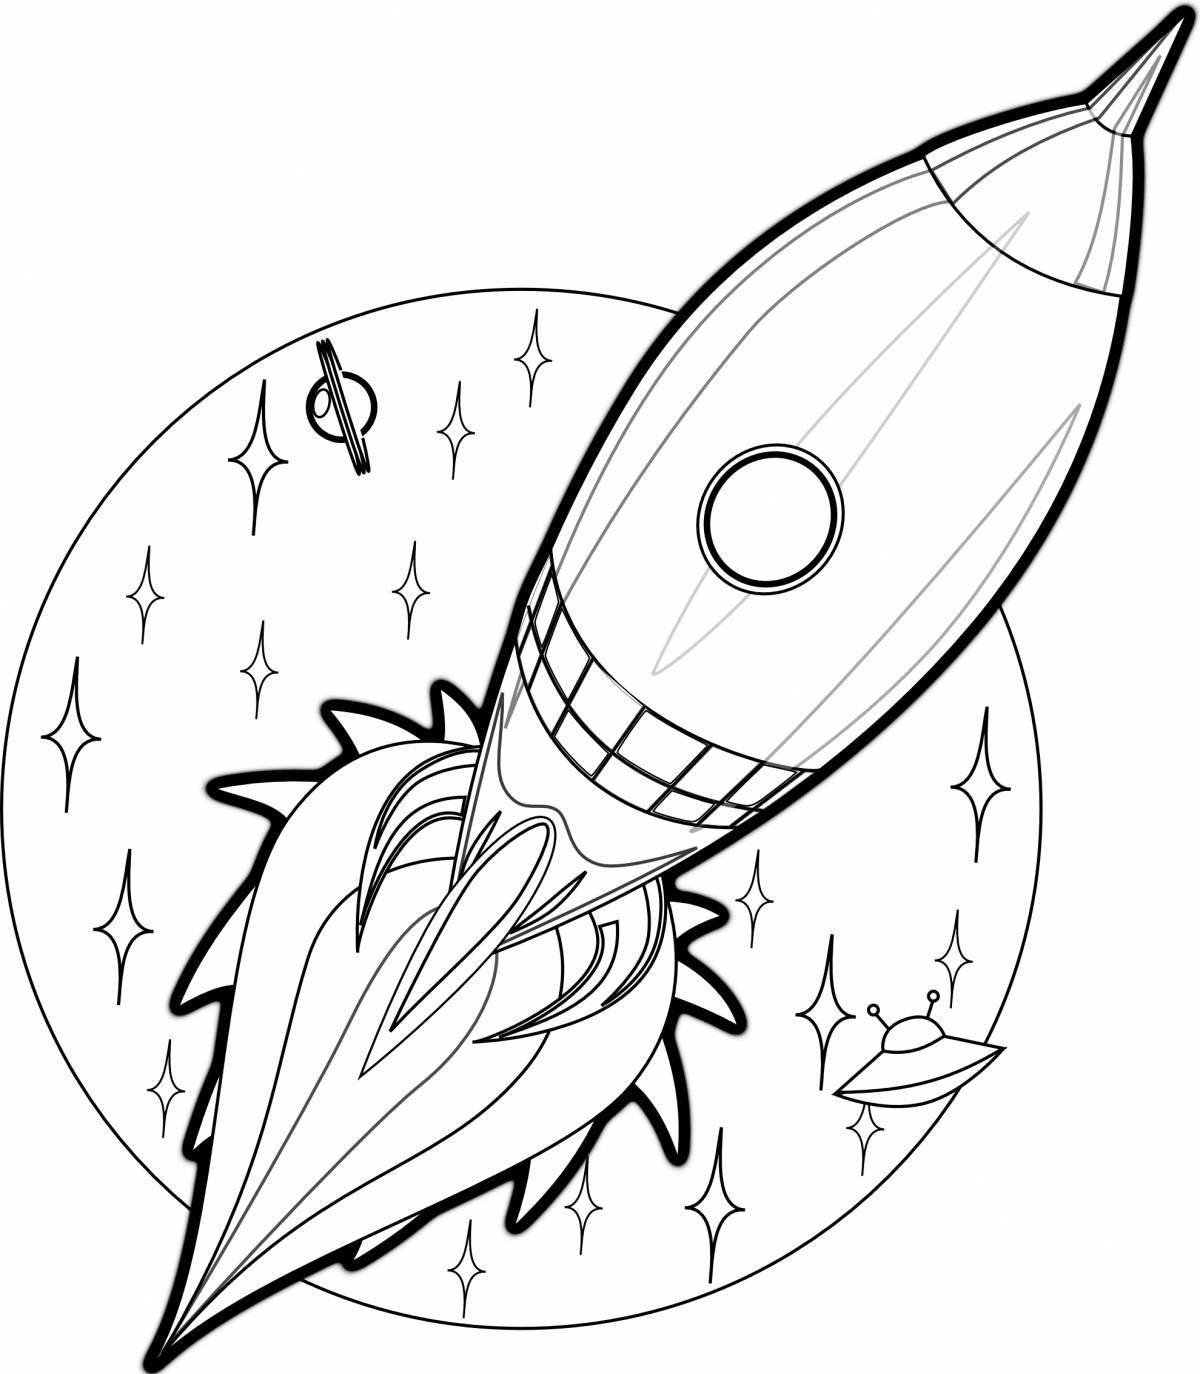 Превосходный рисунок ракеты для детей